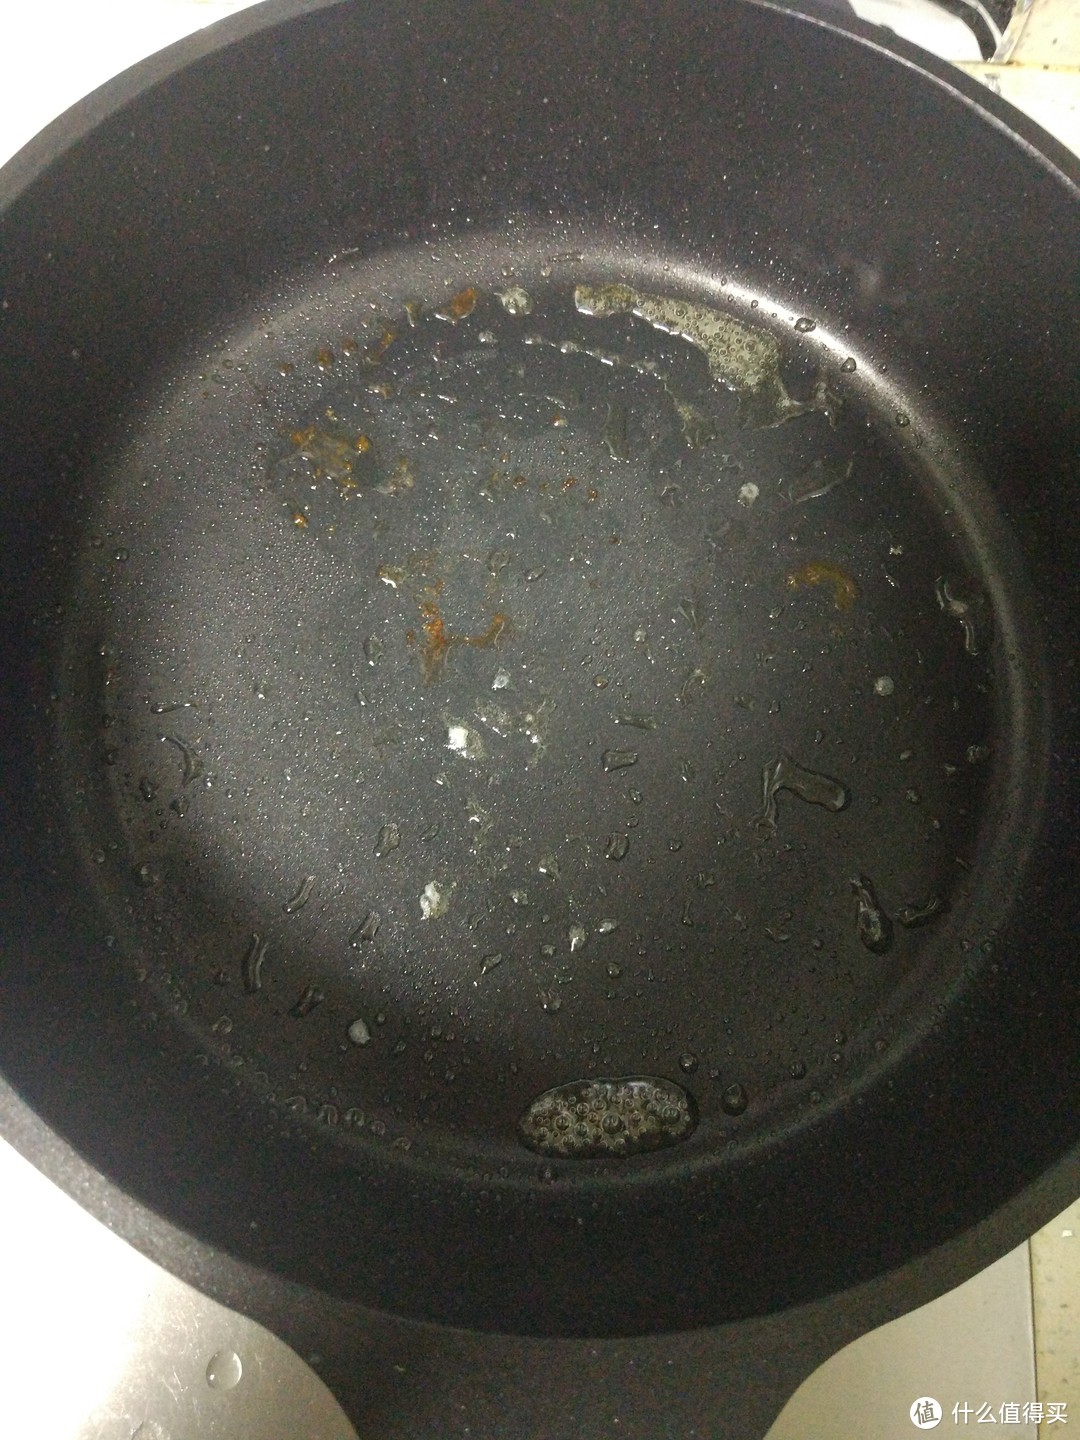 煎完之后，锅子里就是这样的状态了。可以看到有部分焦焦贴着锅面的感觉。